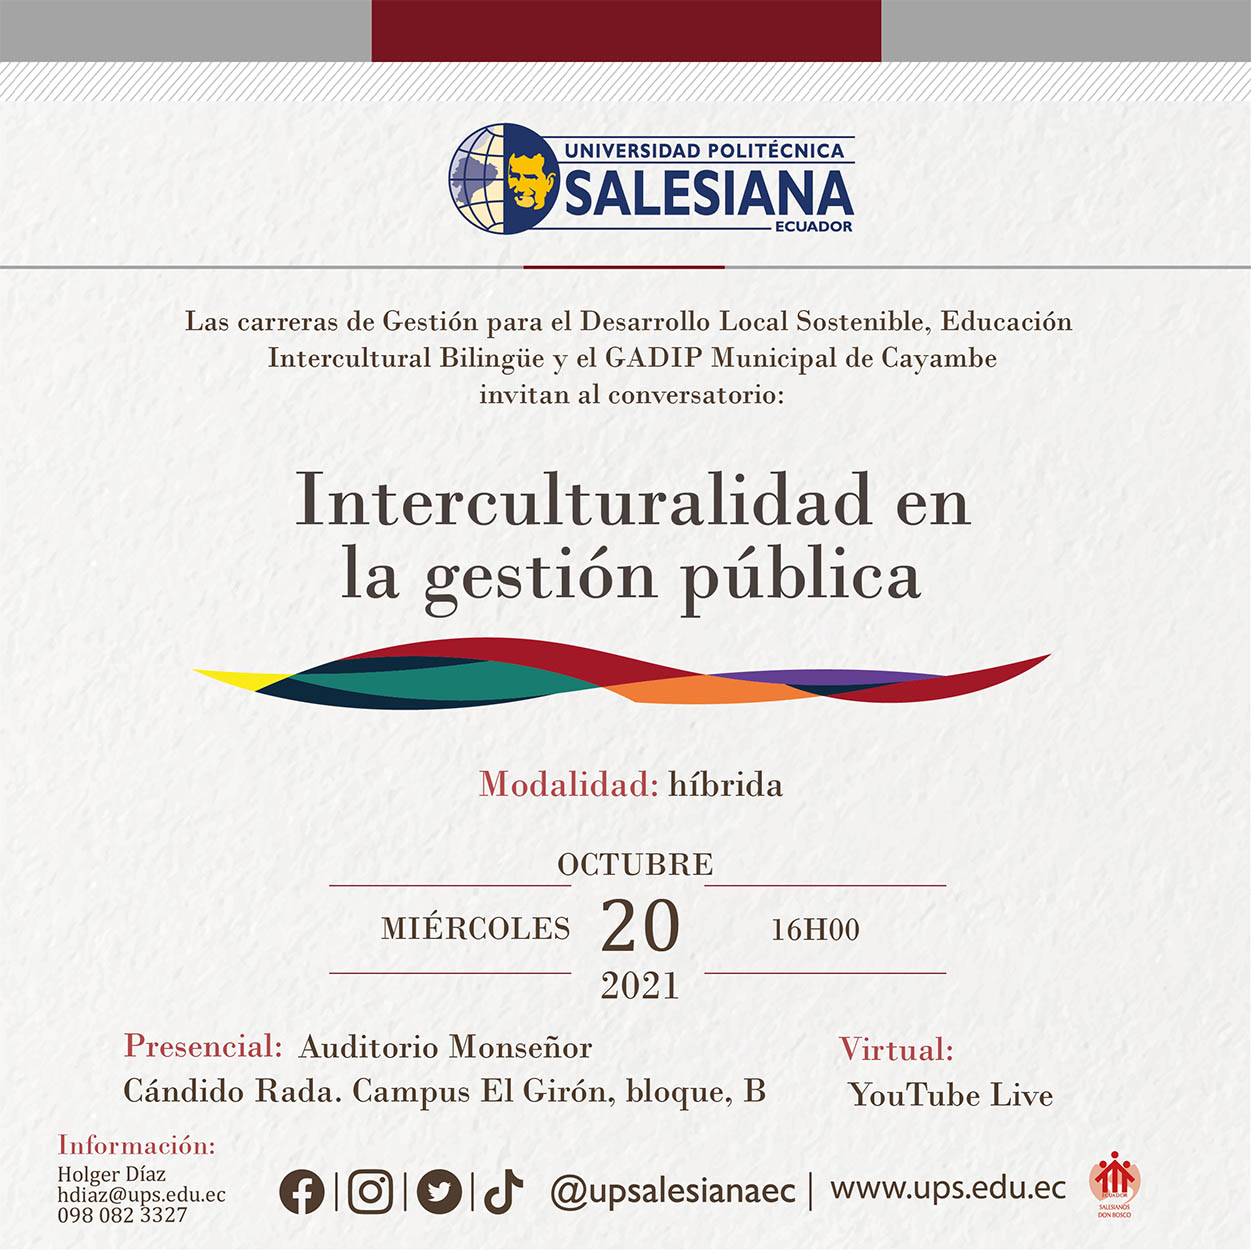 Afiche promocional del Conversatorio: Interculturalidad en la Gestión Pública